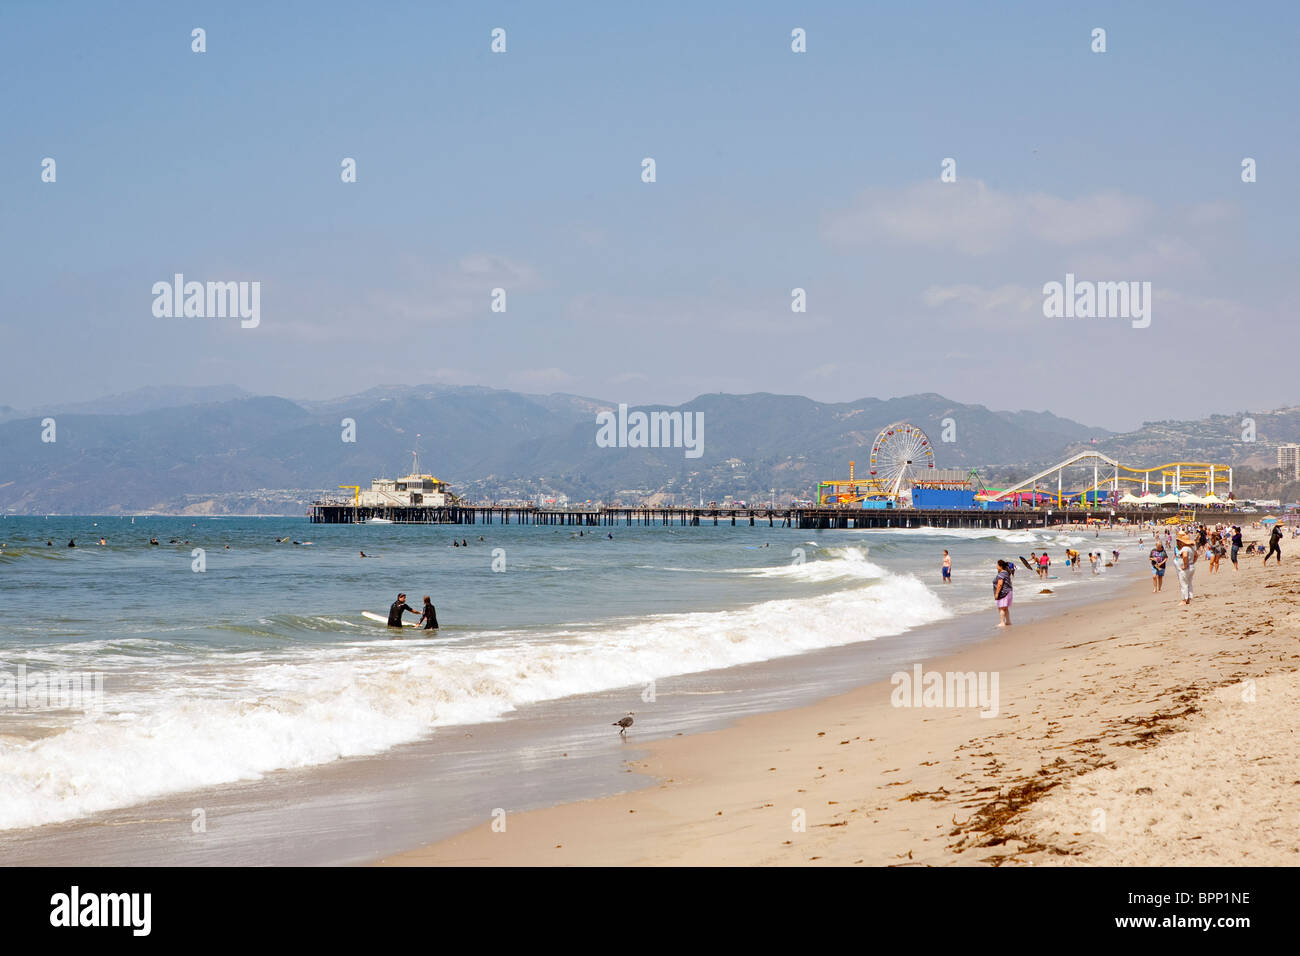 La plage de Santa Monica en Californie, USA Banque D'Images